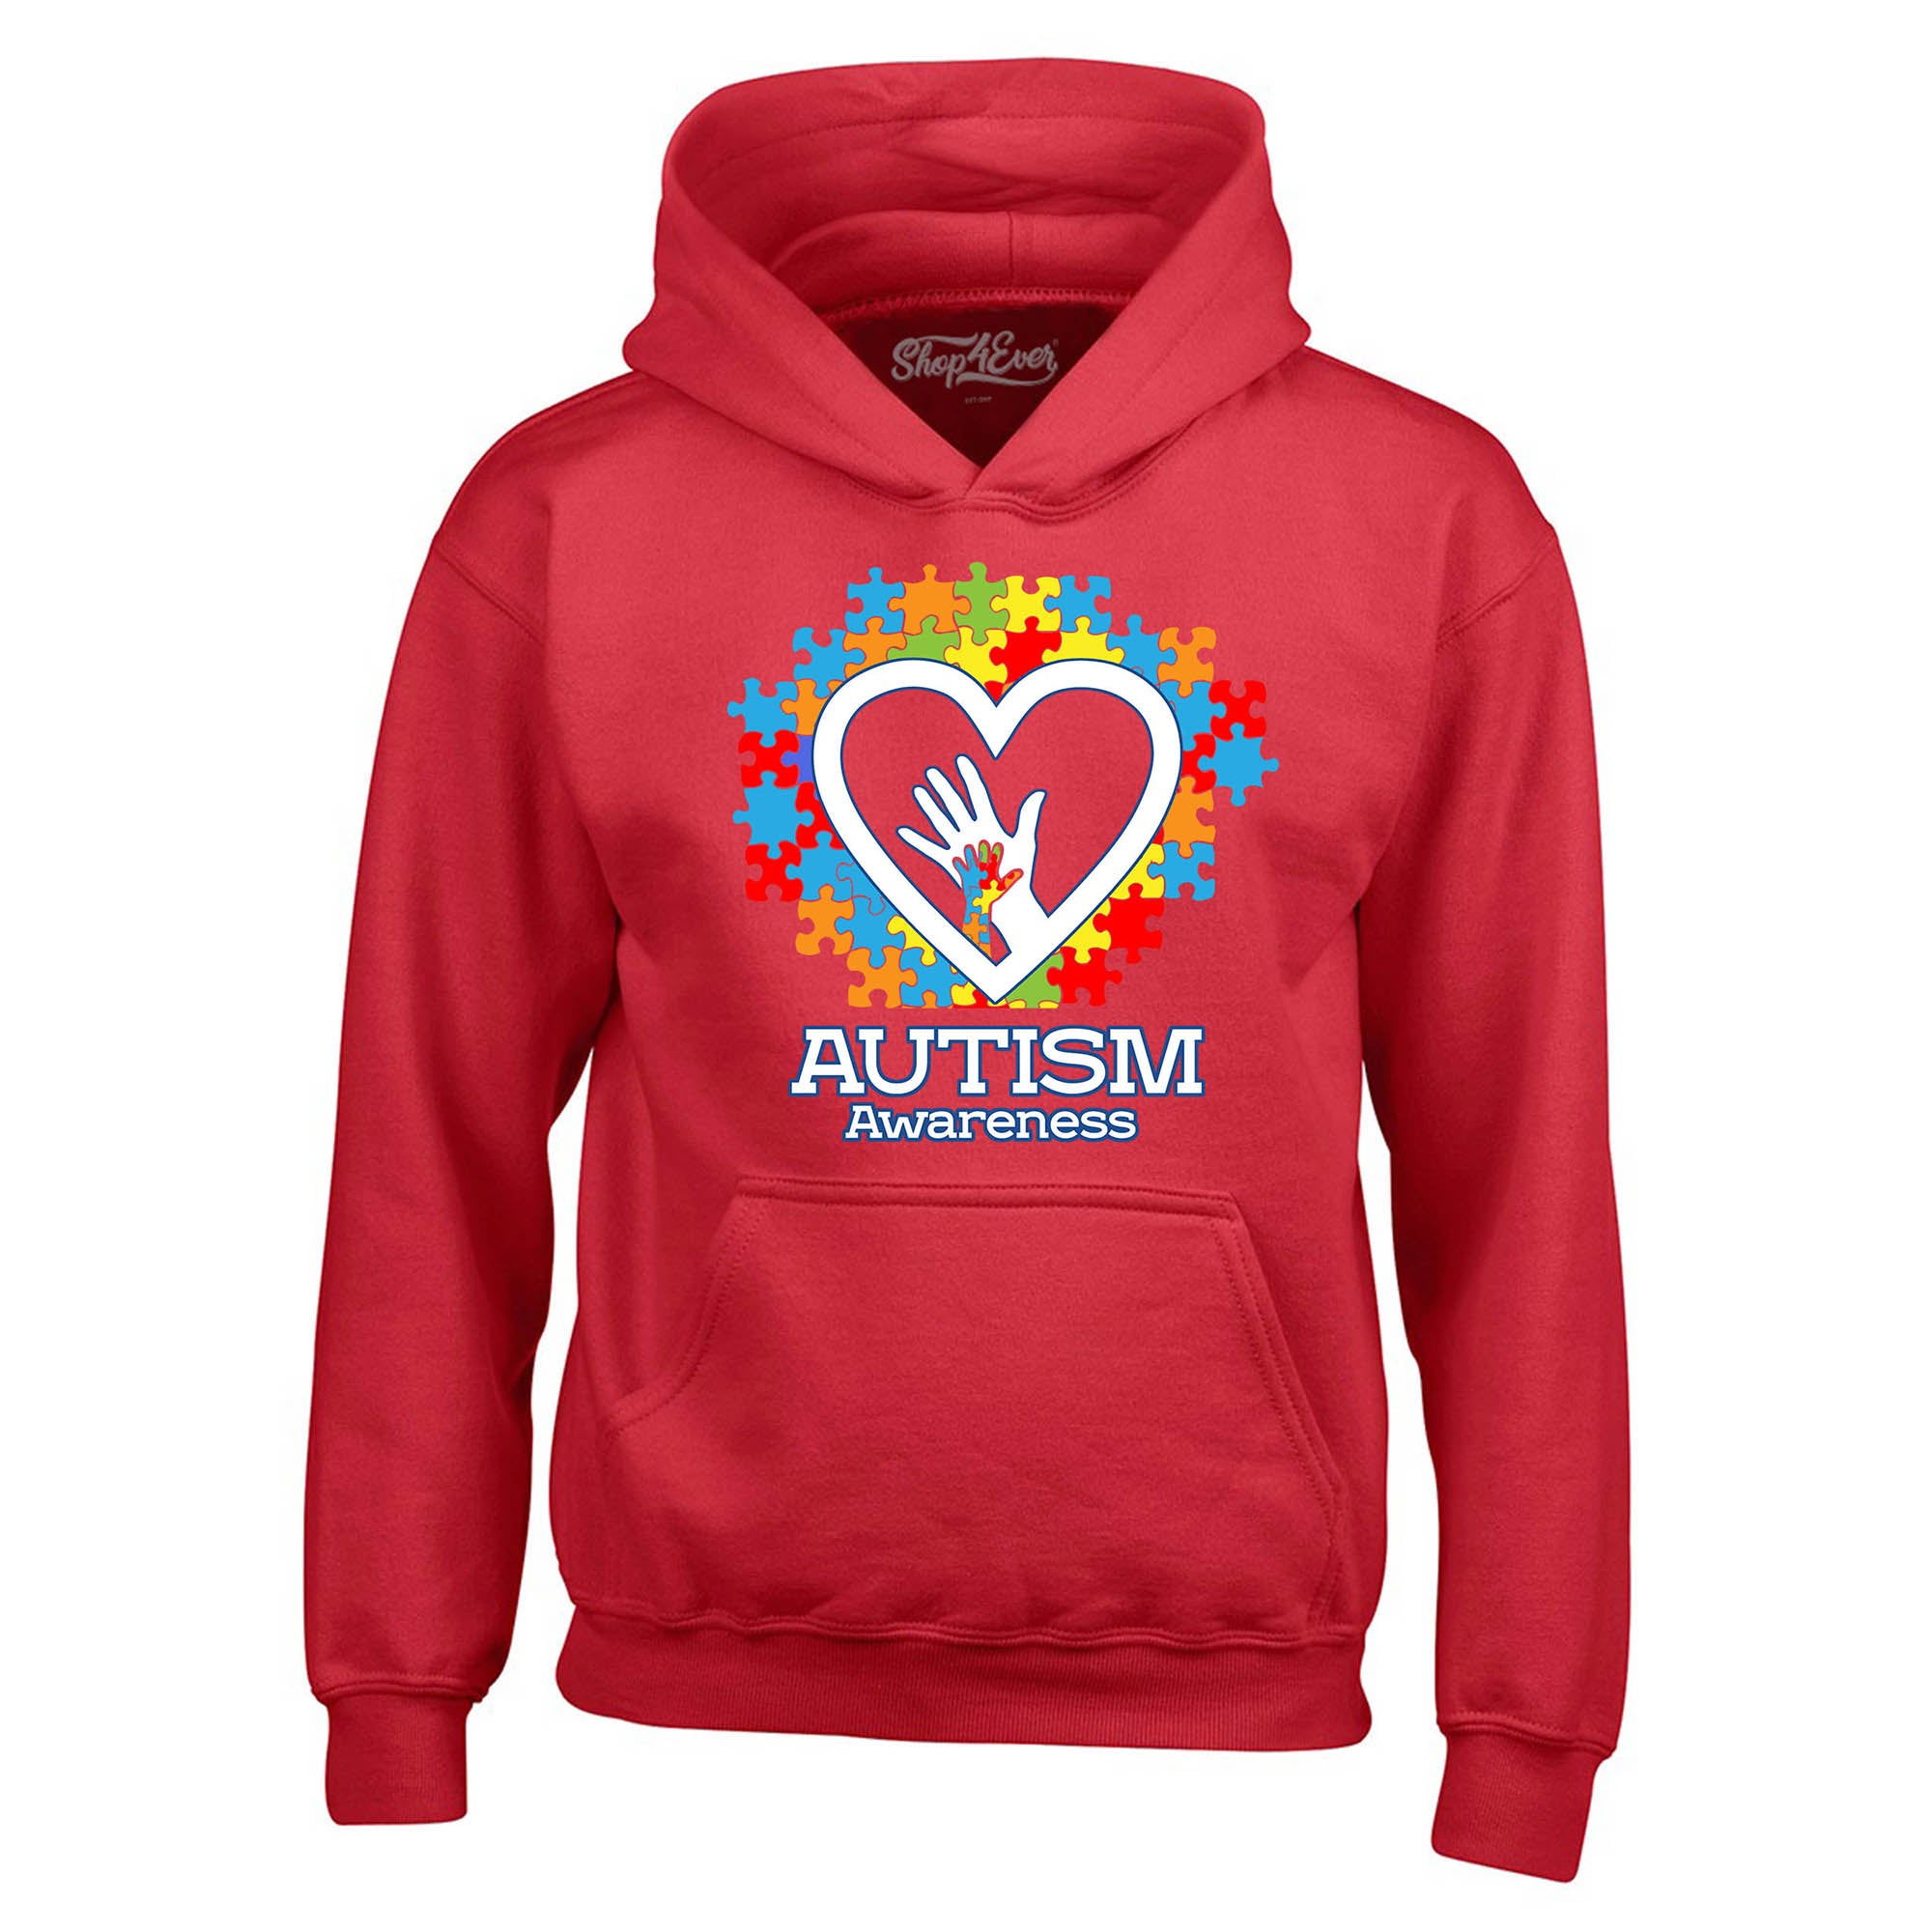 Autism Awareness Hands in Heart Hoodie Sweatshirts